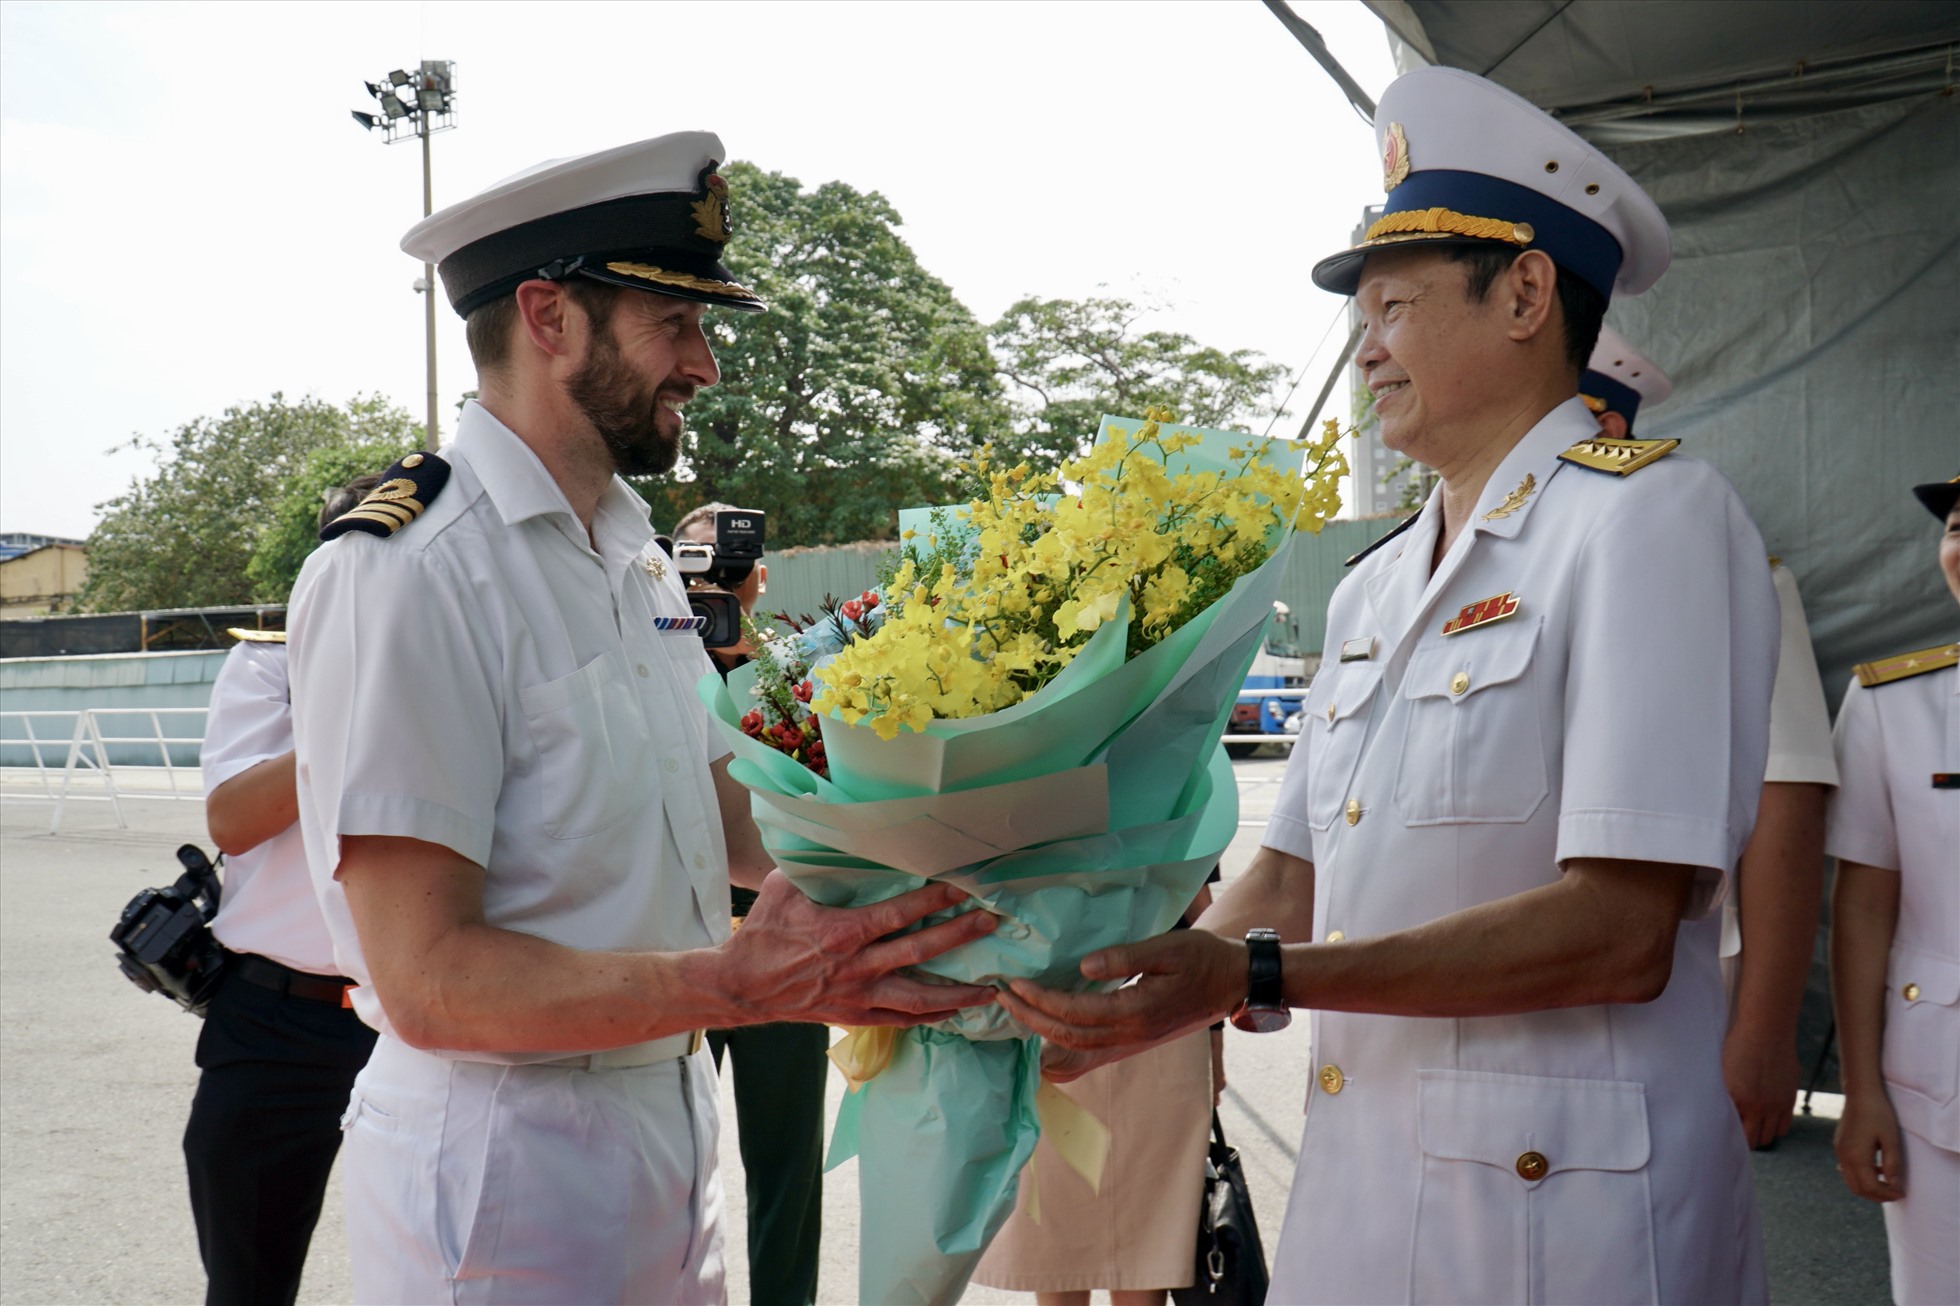 Đại tá Lê Nam Sơn (phải), Phó Lữ đoàn trưởng Lữ đoàn 125, Bộ Tư lệnh Vùng 2 Hải quân đại diện lãnh đạo Quân chủng Hải quân Việt Nam tặng hoa, đón Trung tá Michael Proudman (phải), thuyền trưởng chỉ huy tàu HMS Spey.